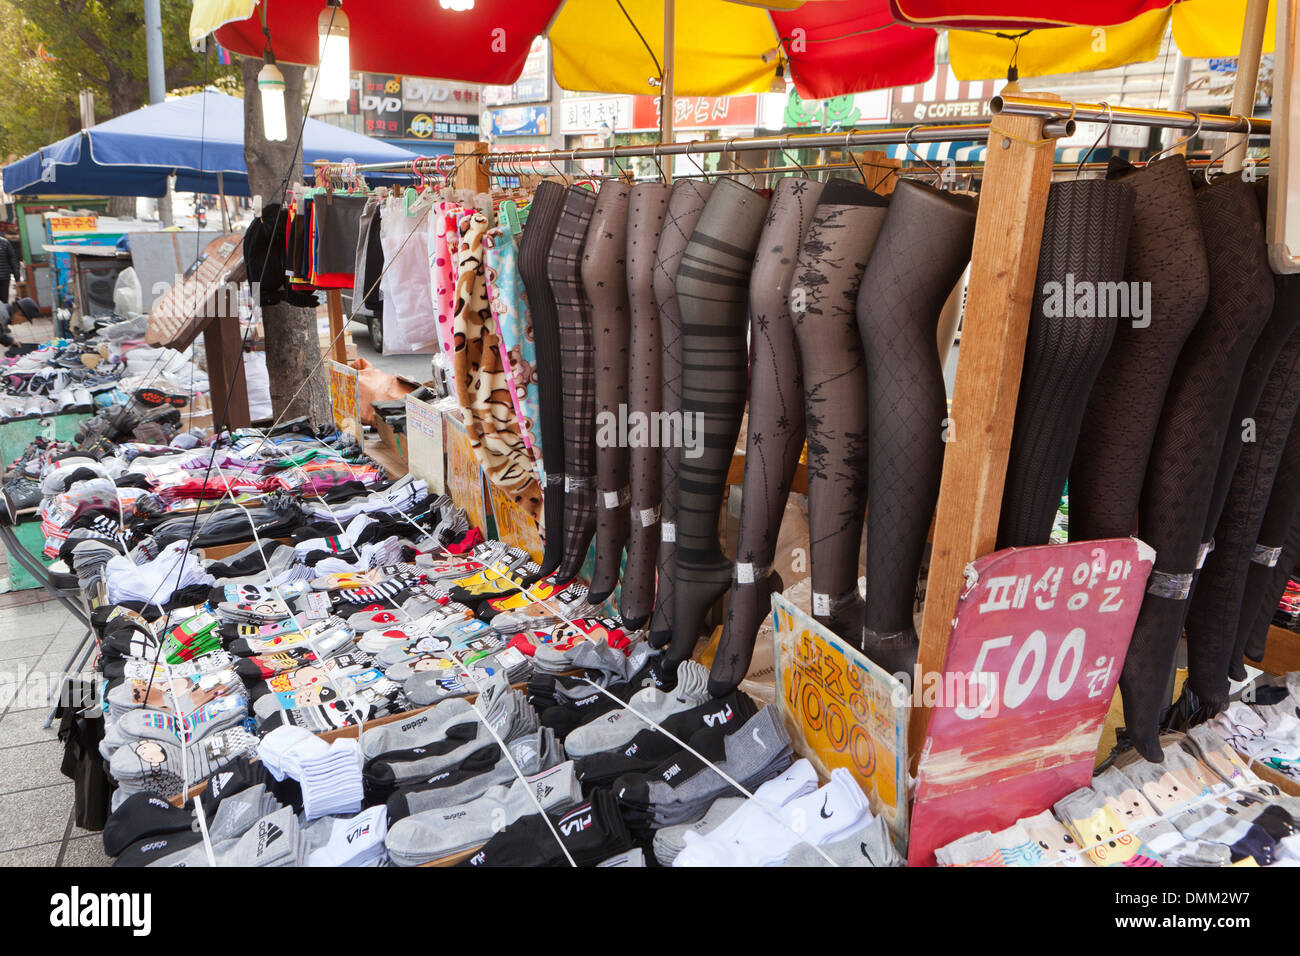 Chaussettes et collants vendeur de rue, stand - Busan, Corée du Sud Banque D'Images